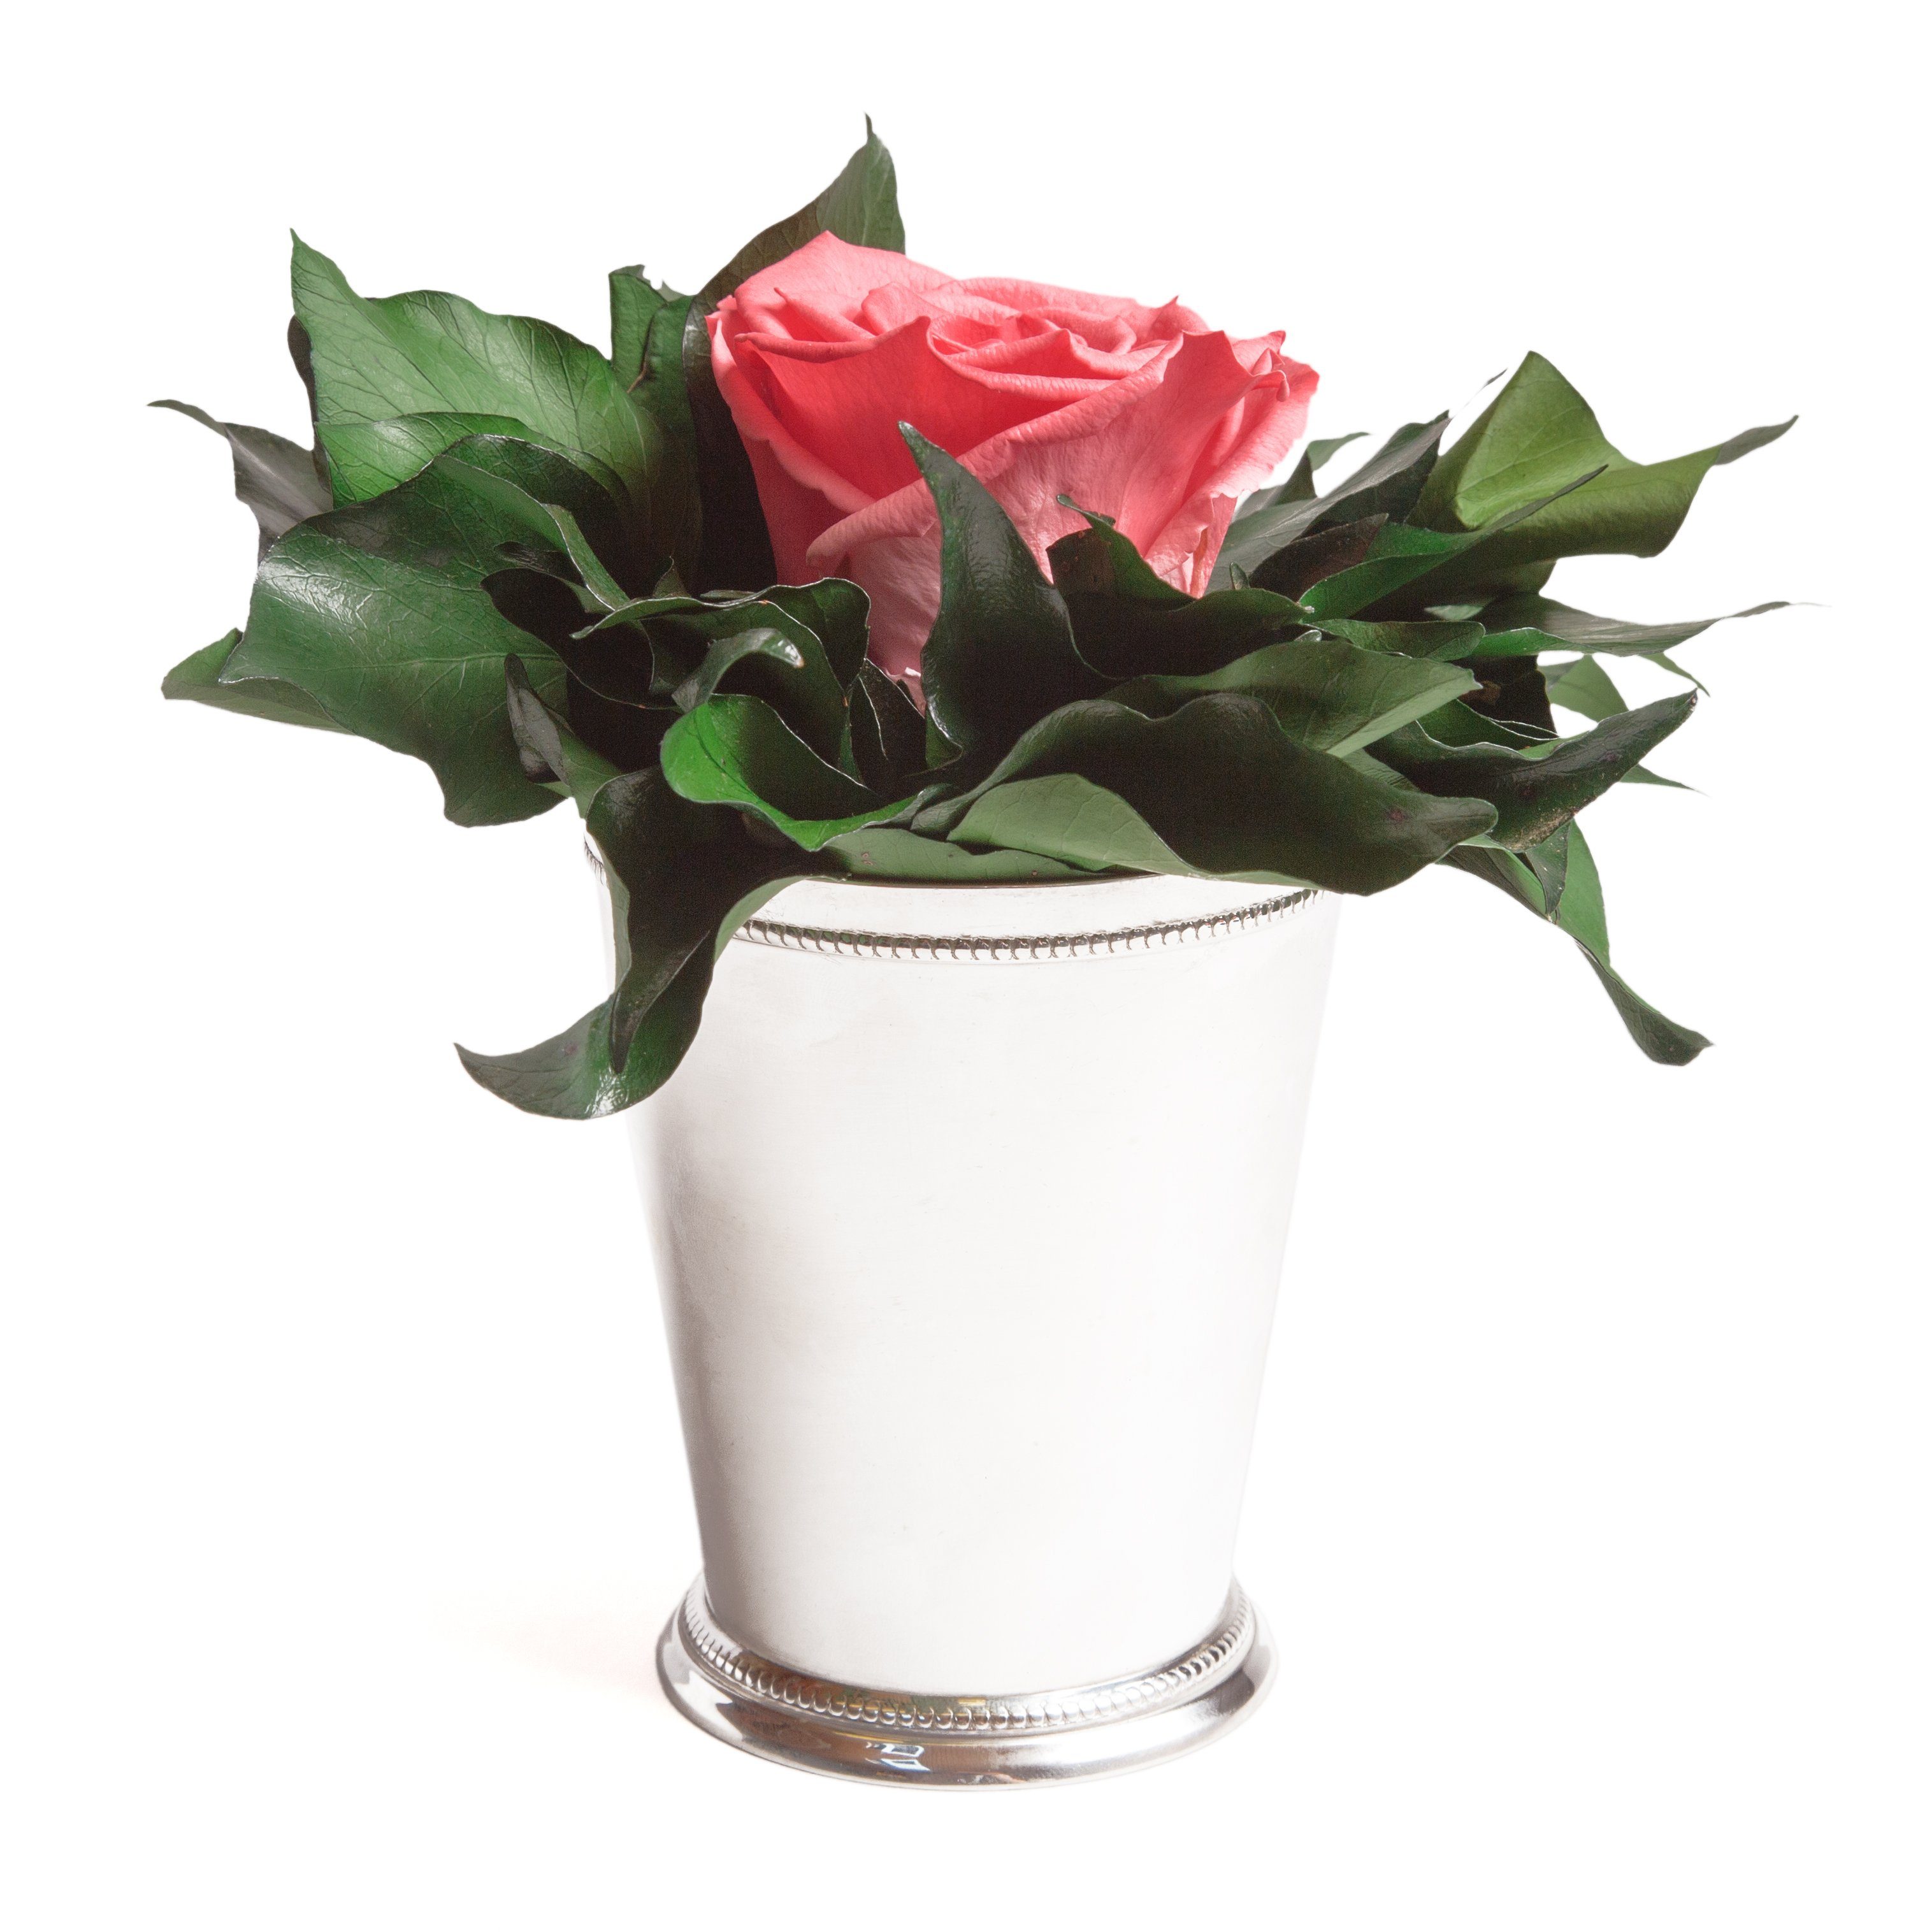 Künstliche Zimmerpflanze 1 Infinity Blume Becher silberfarben Geschenkidee für Frauen Rose, ROSEMARIE SCHULZ Heidelberg, Höhe 12 cm, Echte Rose lange haltbar Korall